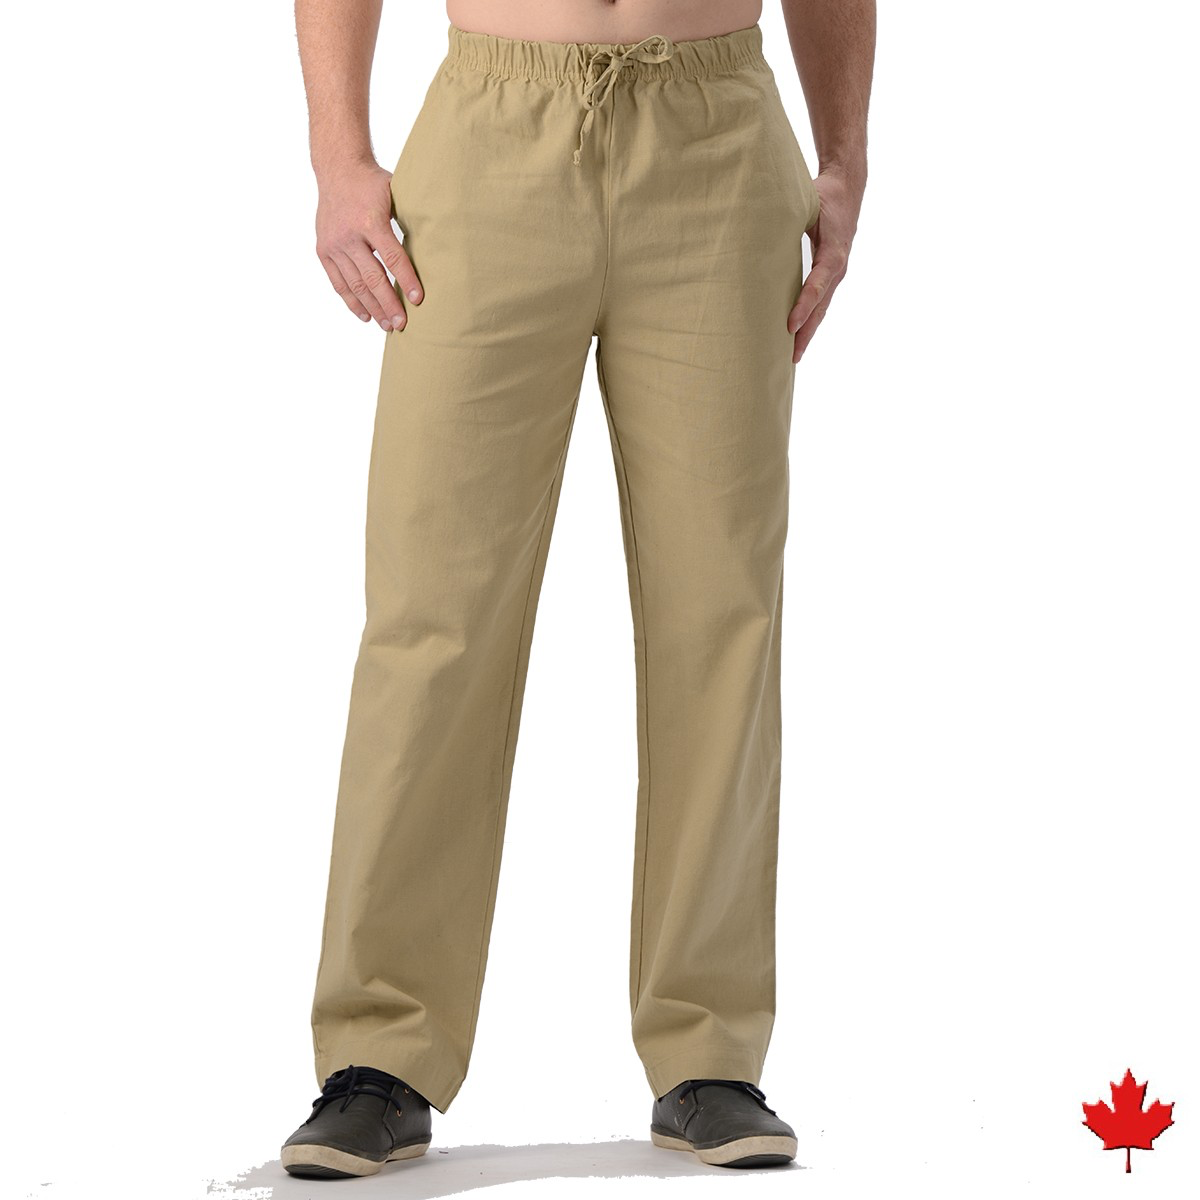 Men's Hemp/Organic Cotton Pants-Natural